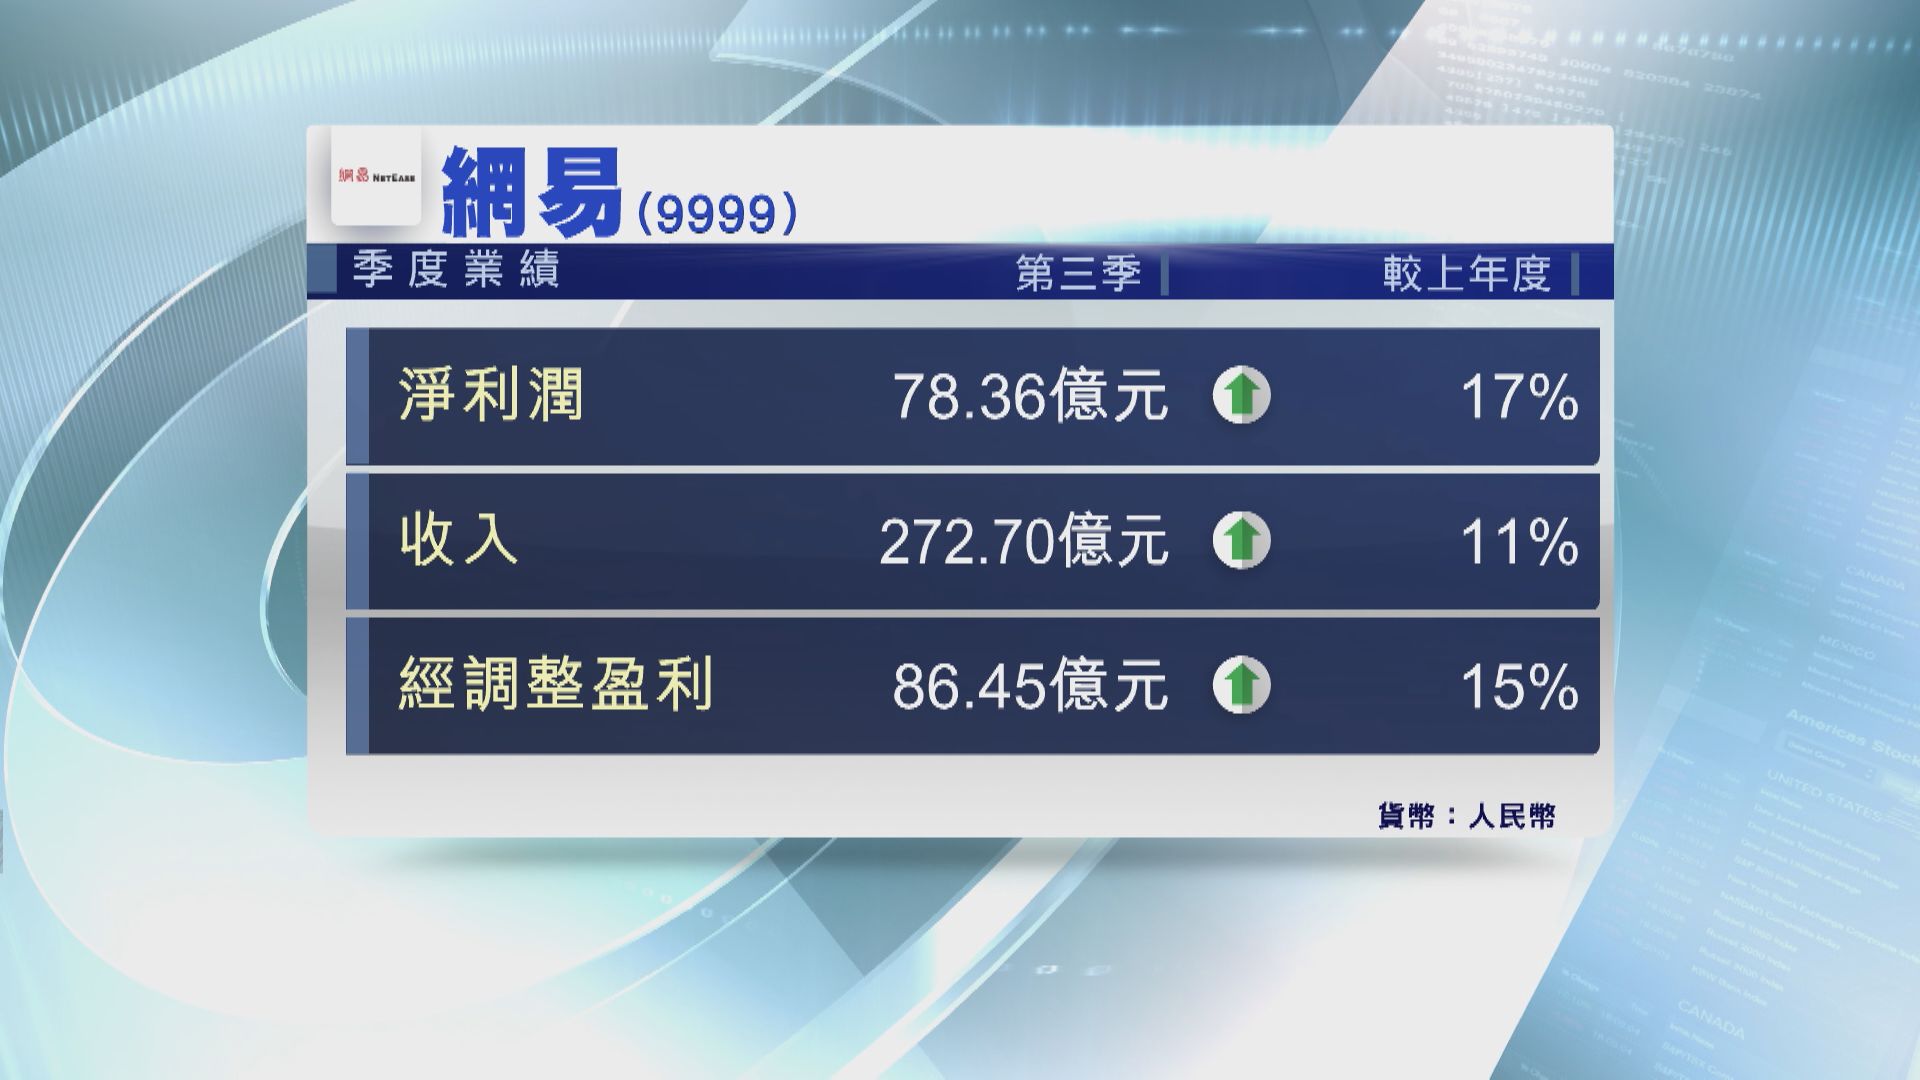 【藍籌業績】網易第3季經調整淨利潤按年升15%